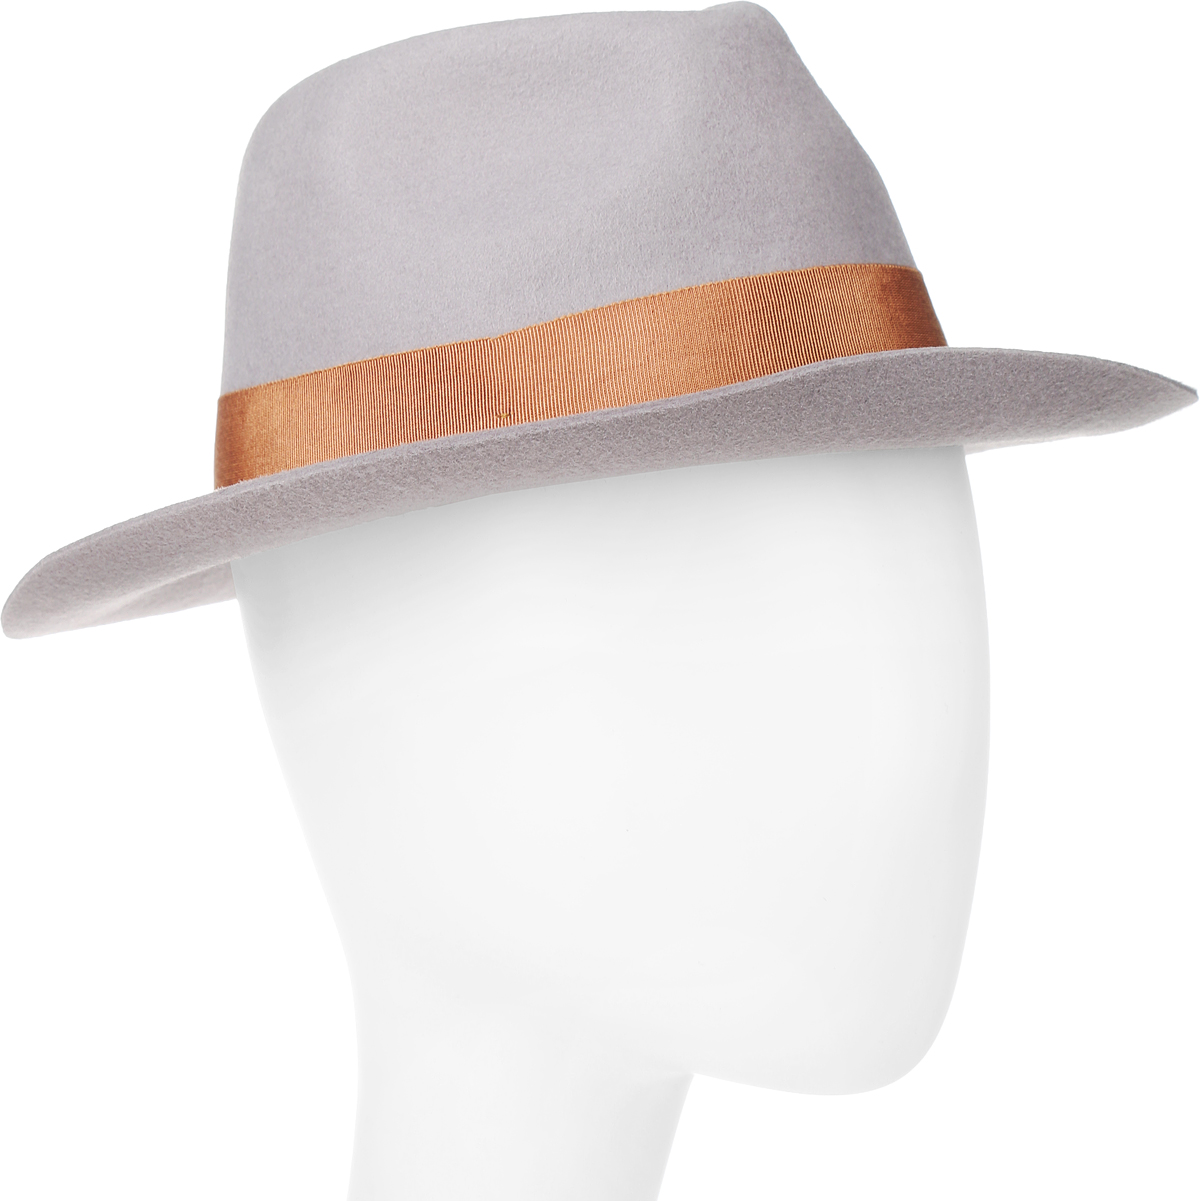 Шляпа Goorin Brothers, цвет: светло-серый. 100-9877. Размер S (55)